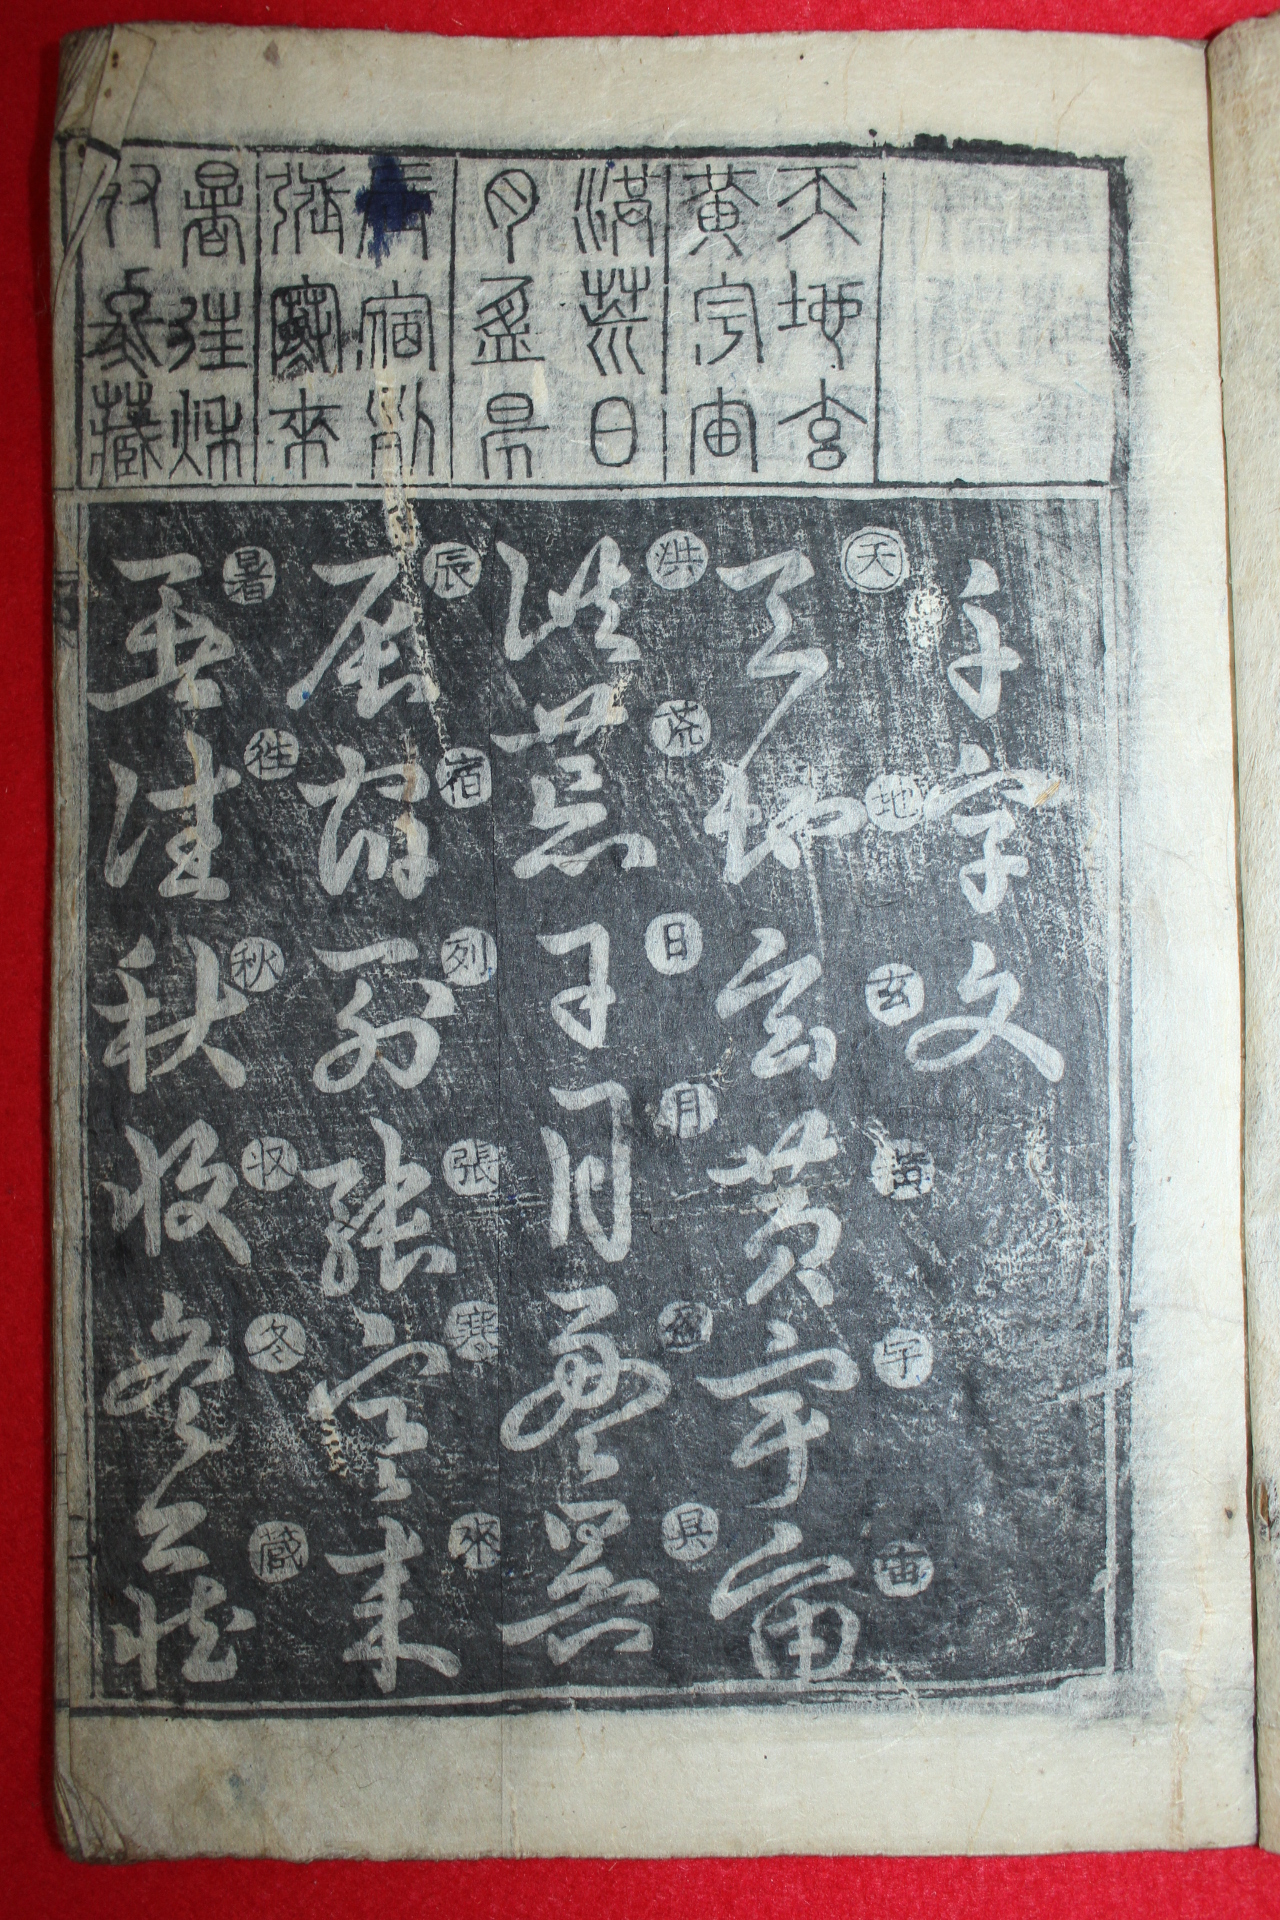 1872년(同治壬申年完山) 목판본 천자문(千字文) 1책완질